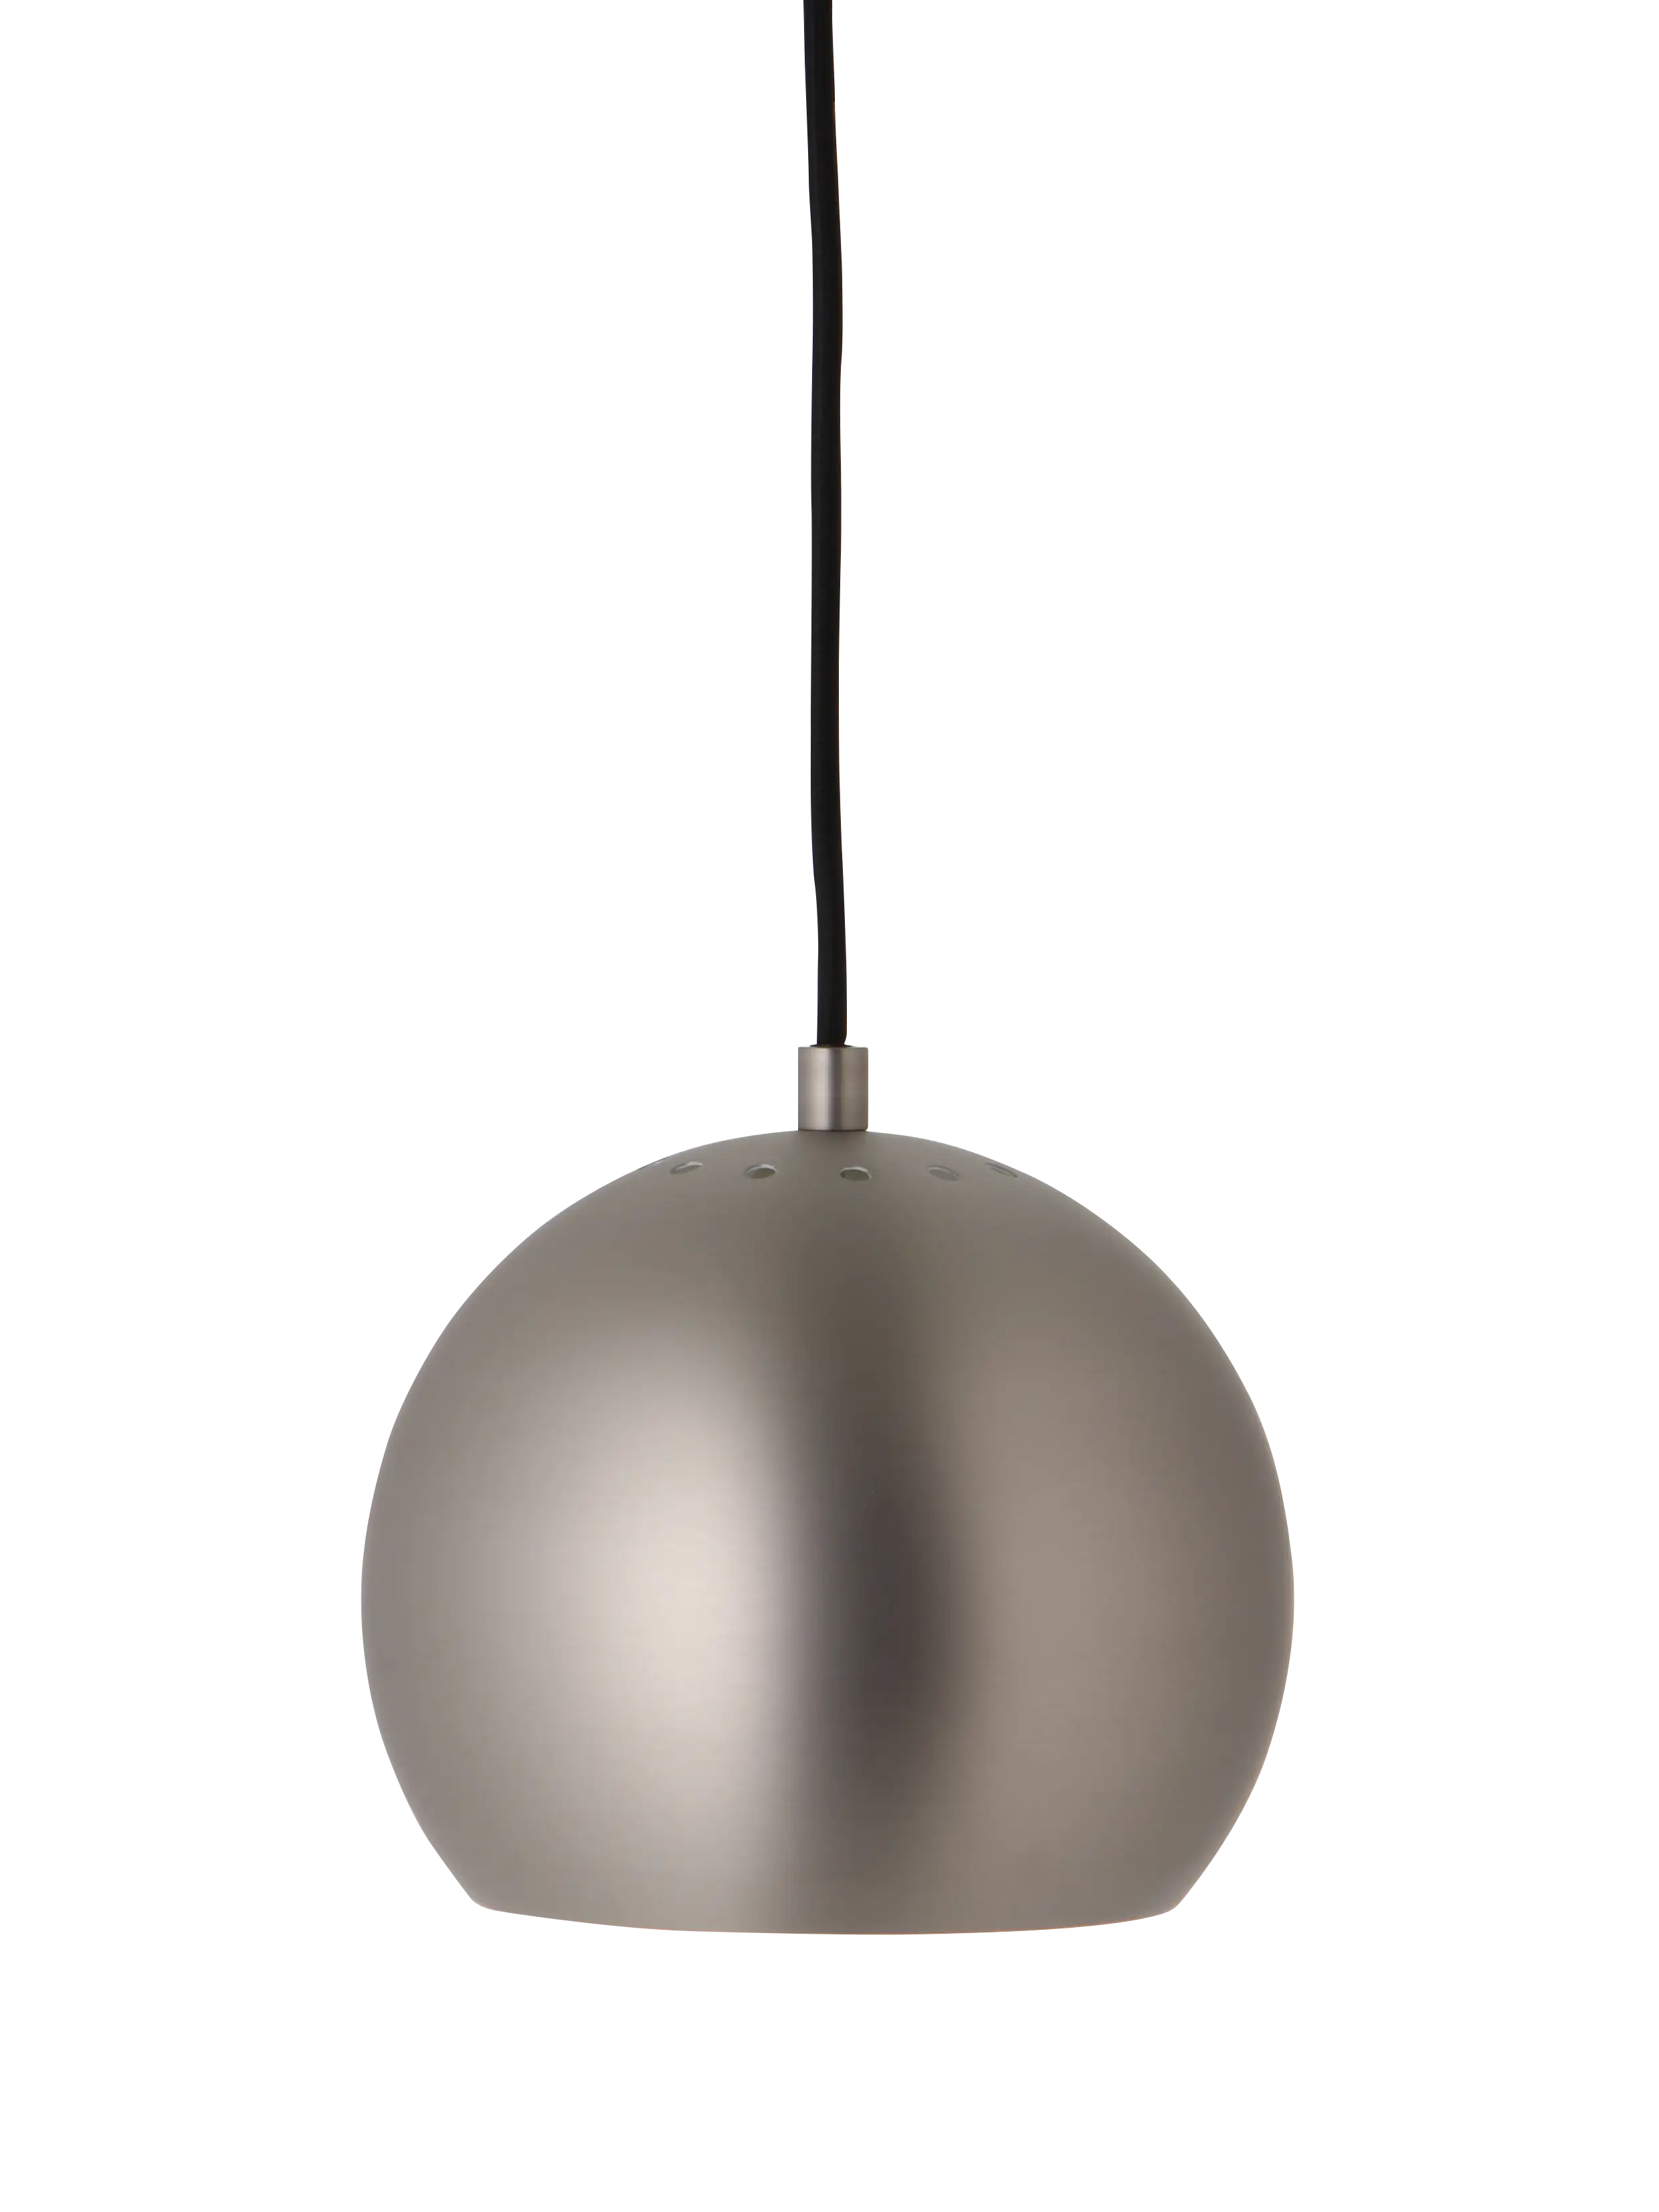 Ball hanglamp